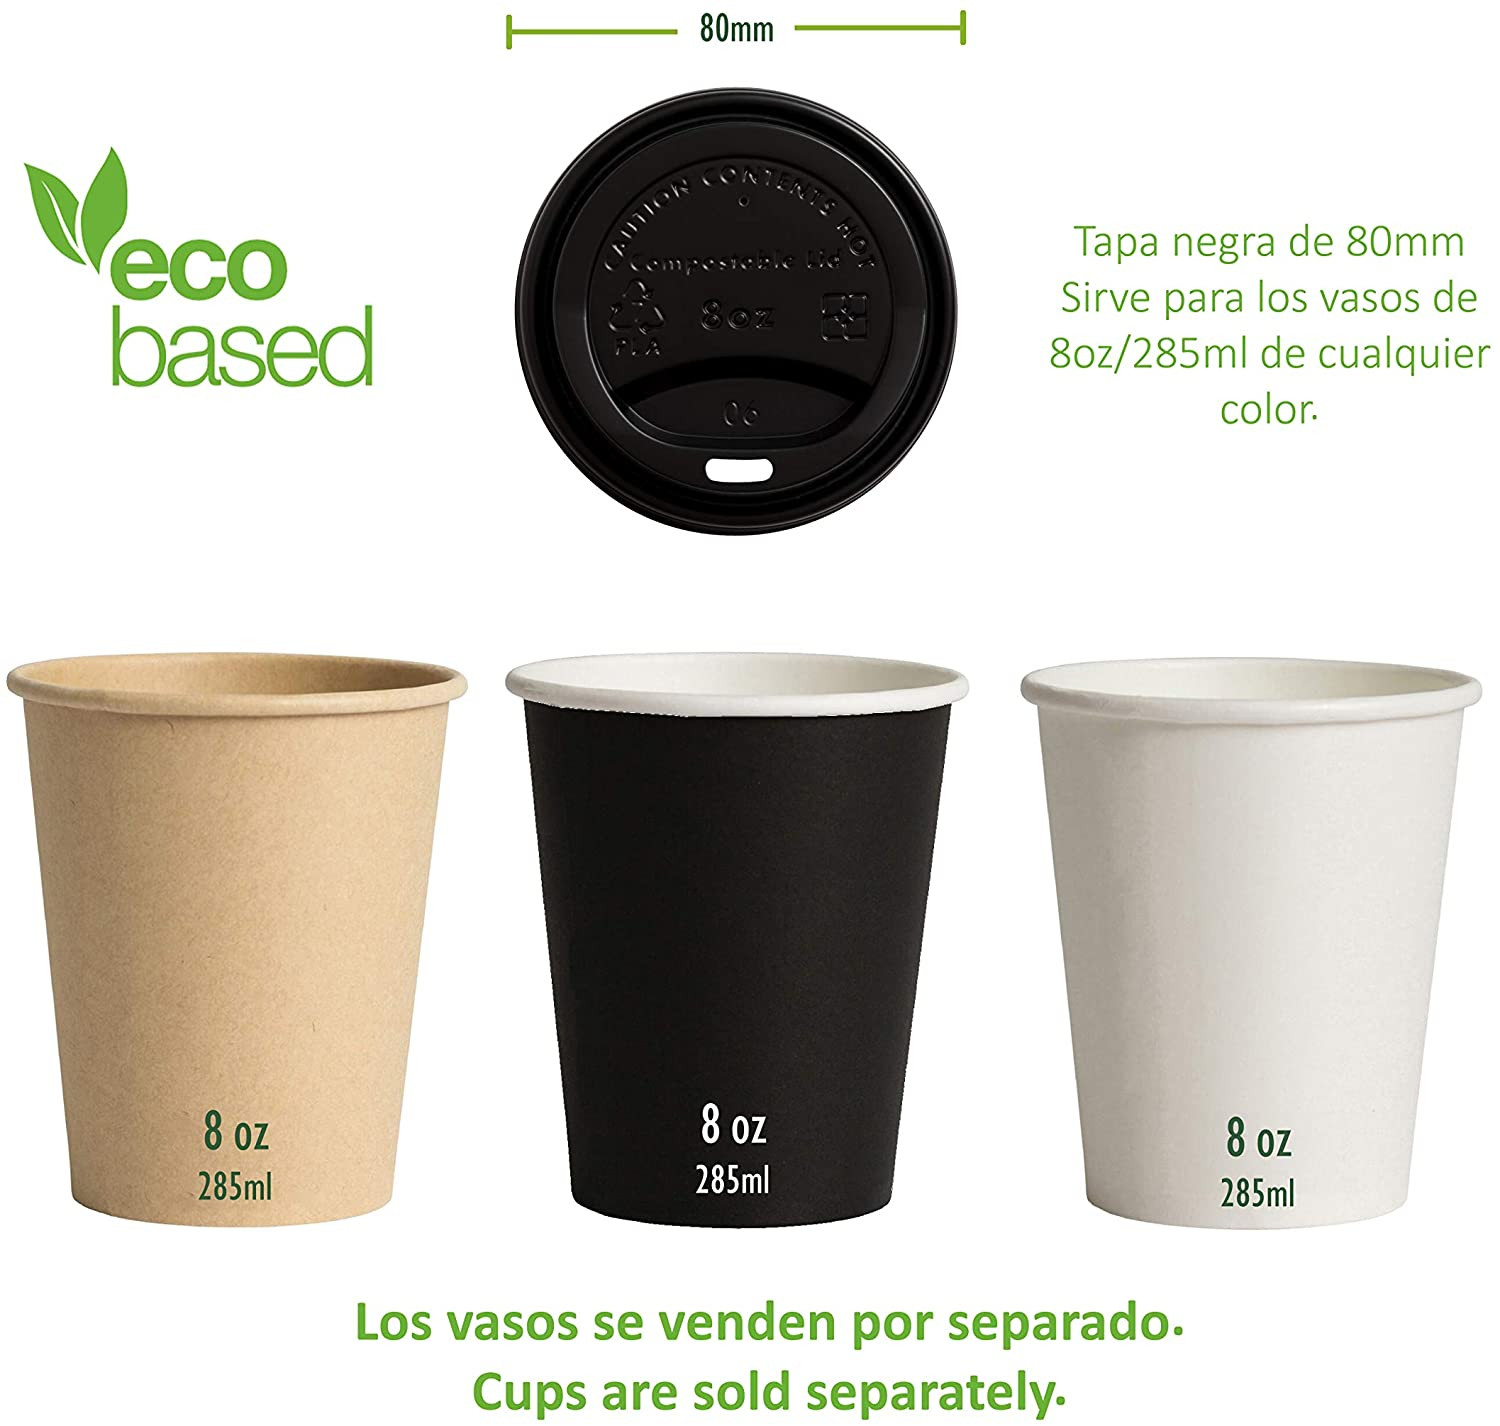 Fabricadas con Ingeo™ Paquete de 50 unidades Tapas Desechables Biodegradables Café Para Llevar Perfecto para Oficinas y Ferias Material 100% Ecológico 90mm./50Uds. 